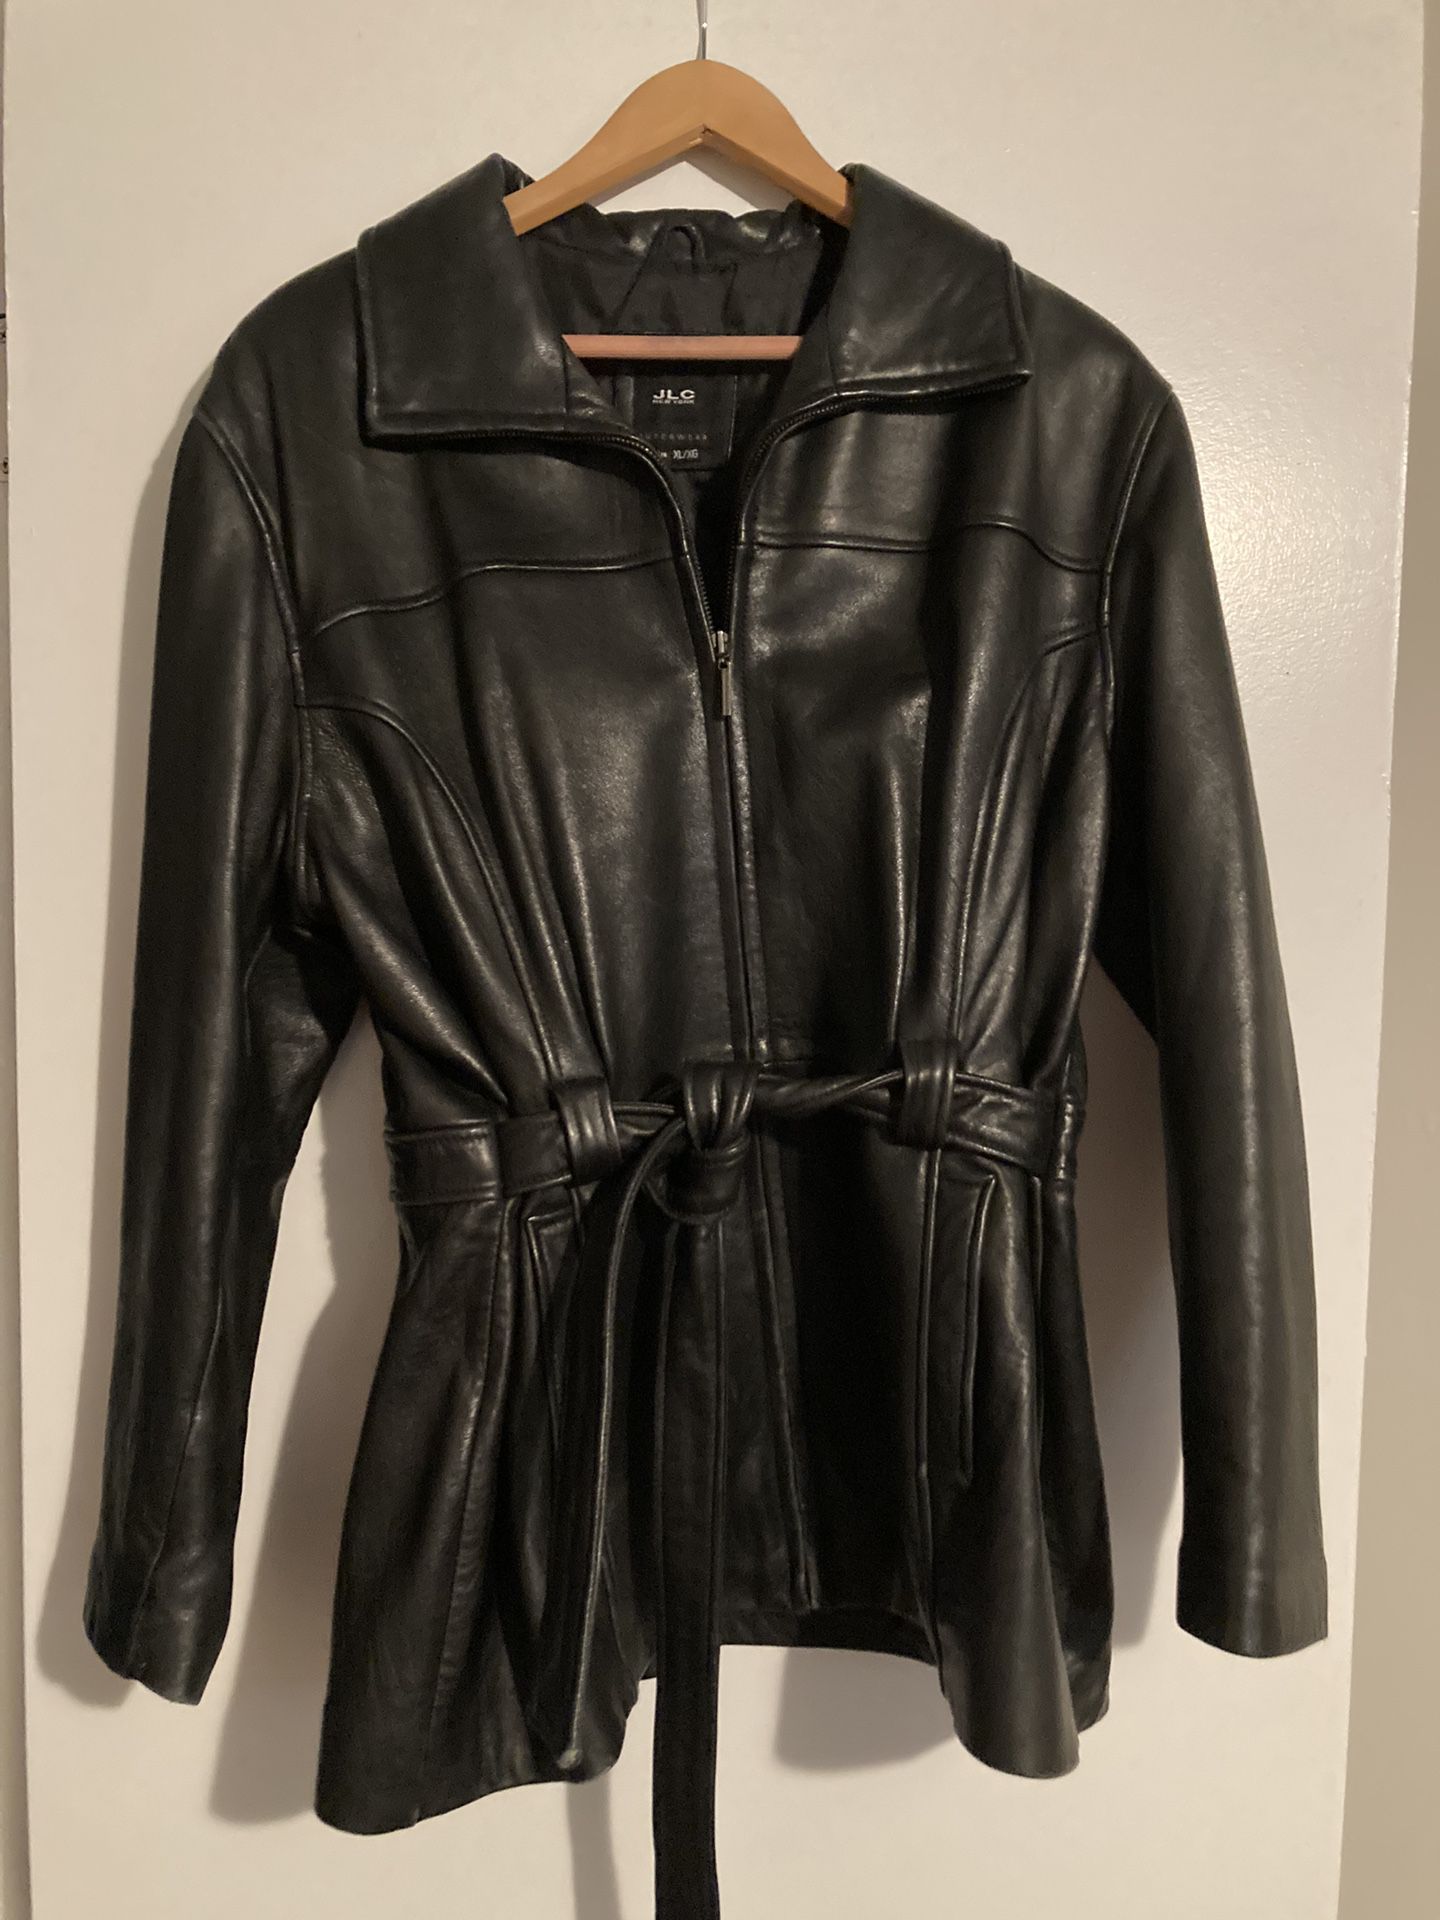 JLC New York Leather Jacket 